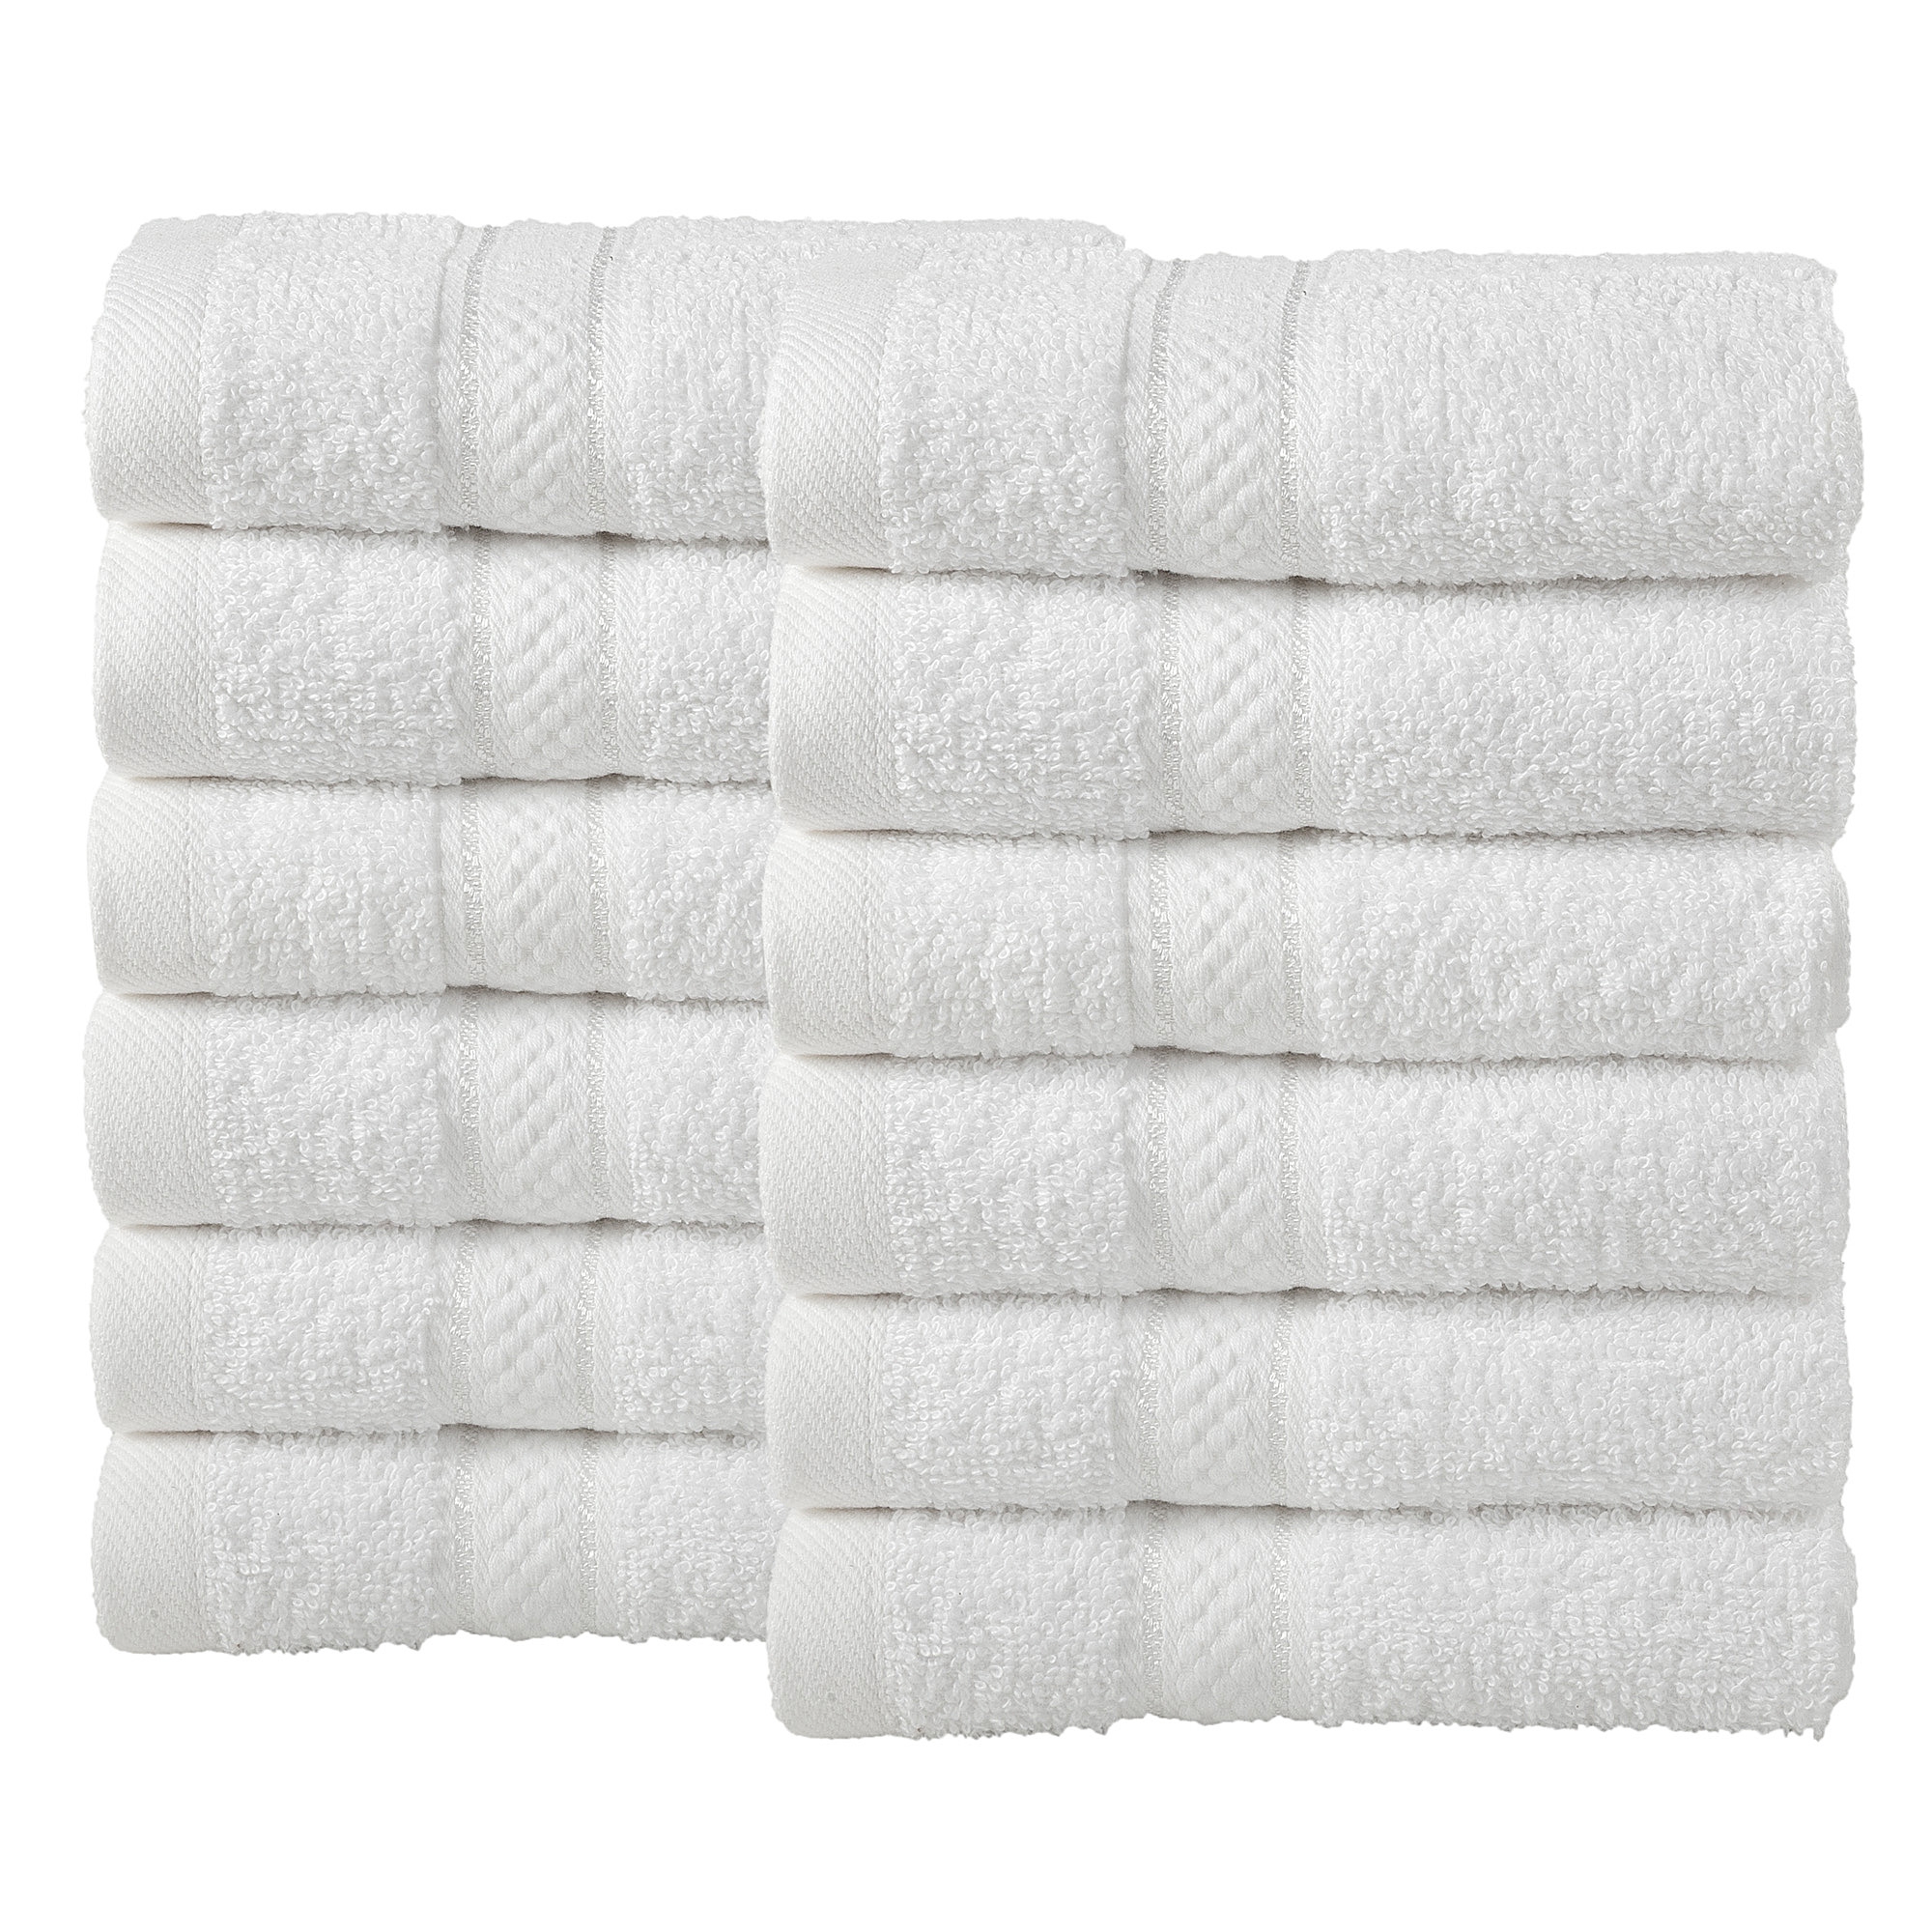 12 Pcs Face Cotton Towel Bale Set White Plain